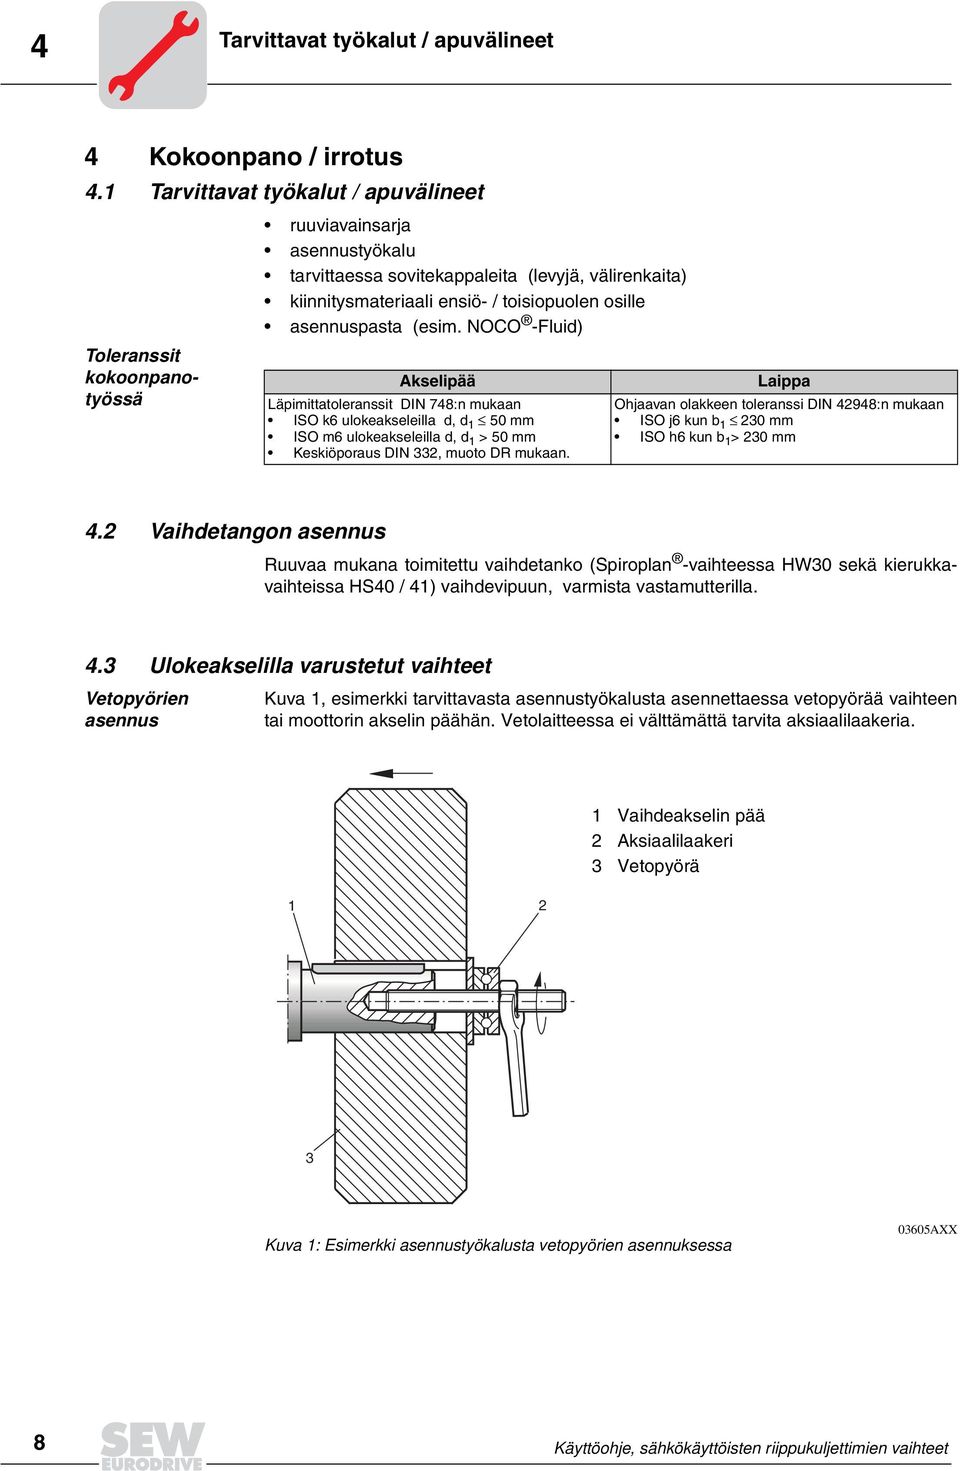 asennuspasta (esim. NOCO -Fluid) Akselipää Läpimittatoleranssit DIN 748:n mukaan ISO k6 ulokeakseleilla d, d 1 50 mm ISO m6 ulokeakseleilla d, d 1 >50mm Keskiöporaus DIN 332, muoto DR mukaan.